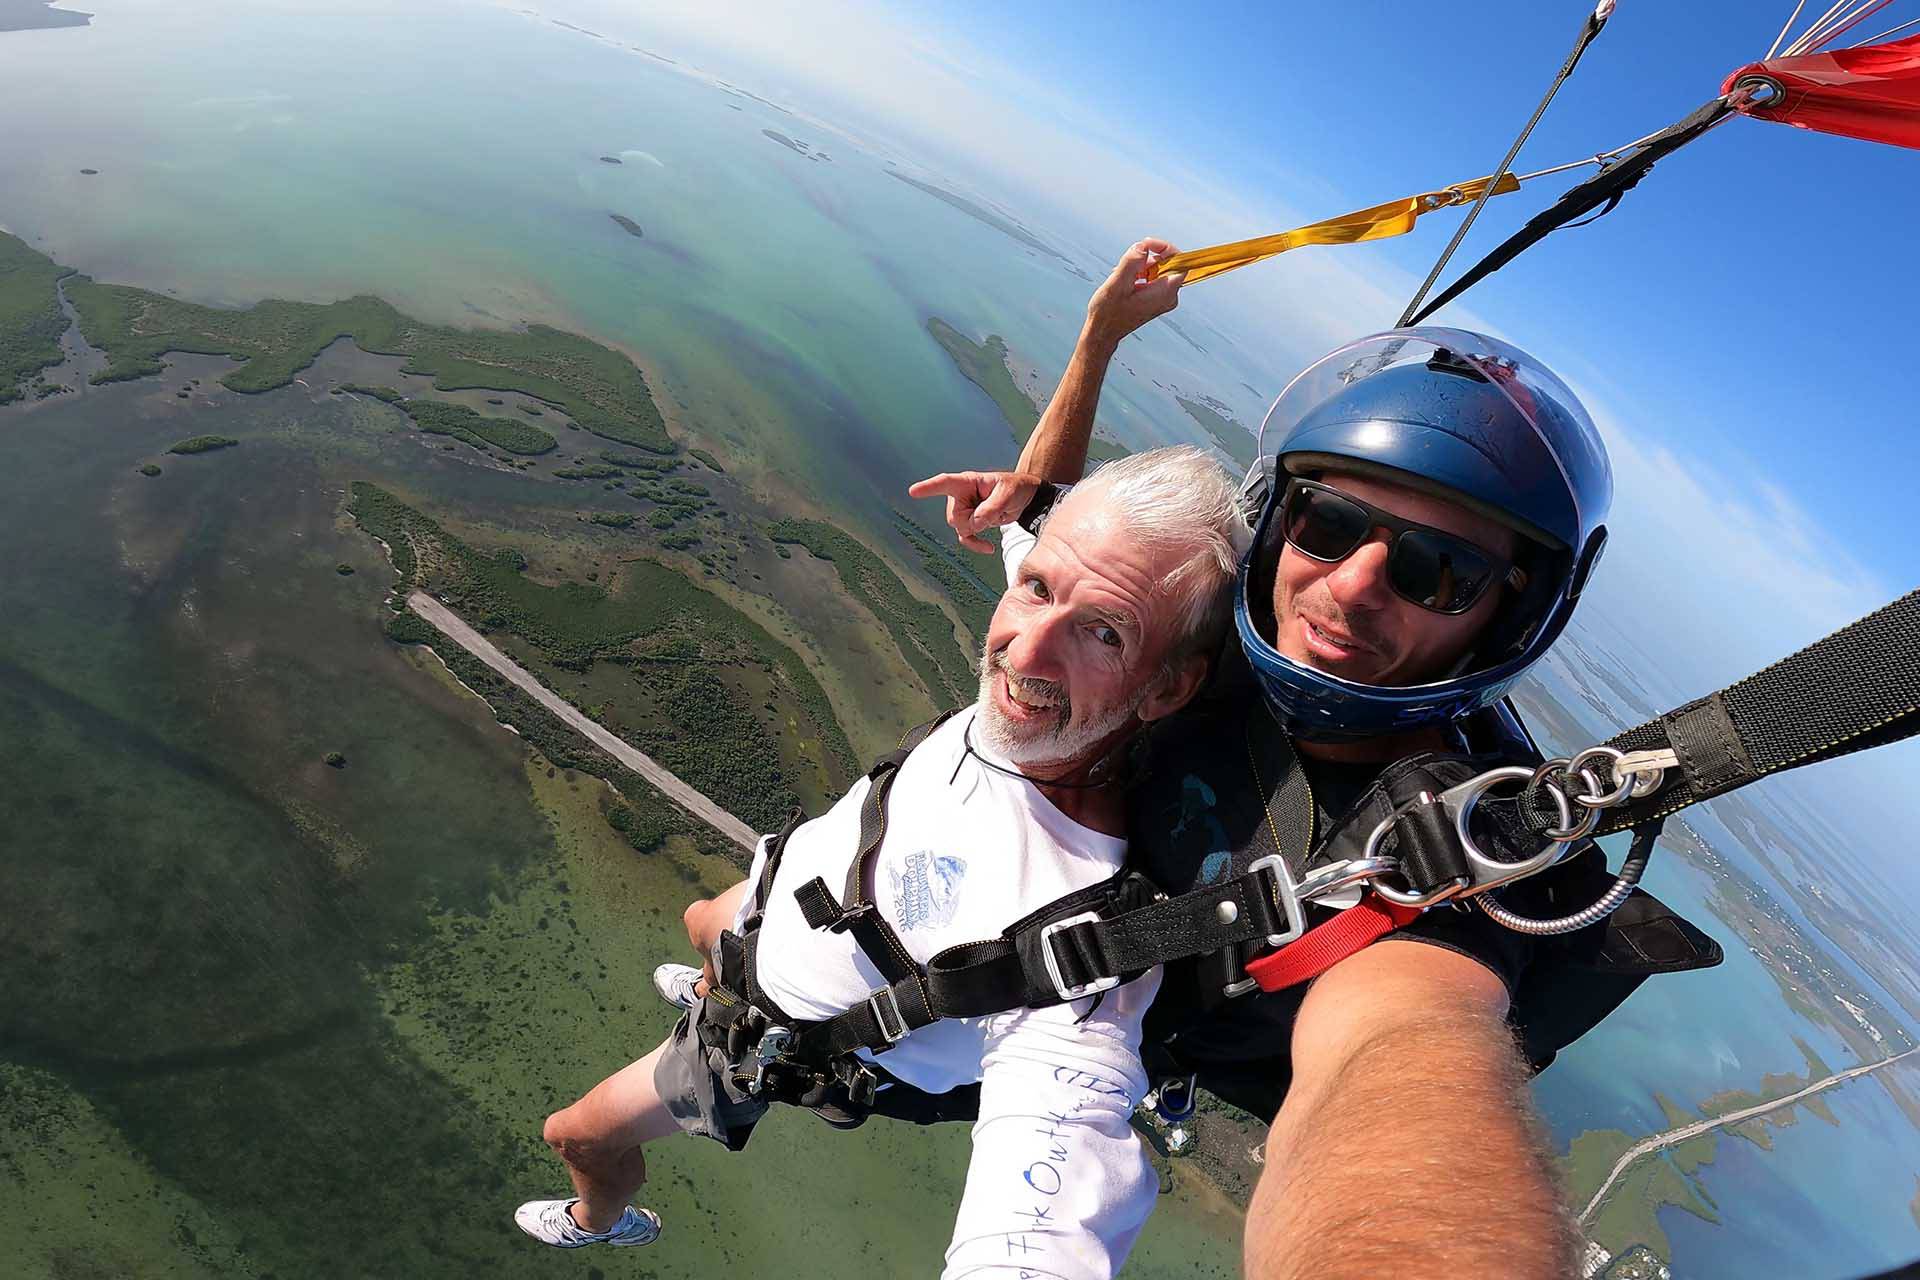 Older gentlemen wearing white shirt smiles while Skydiving South Florida